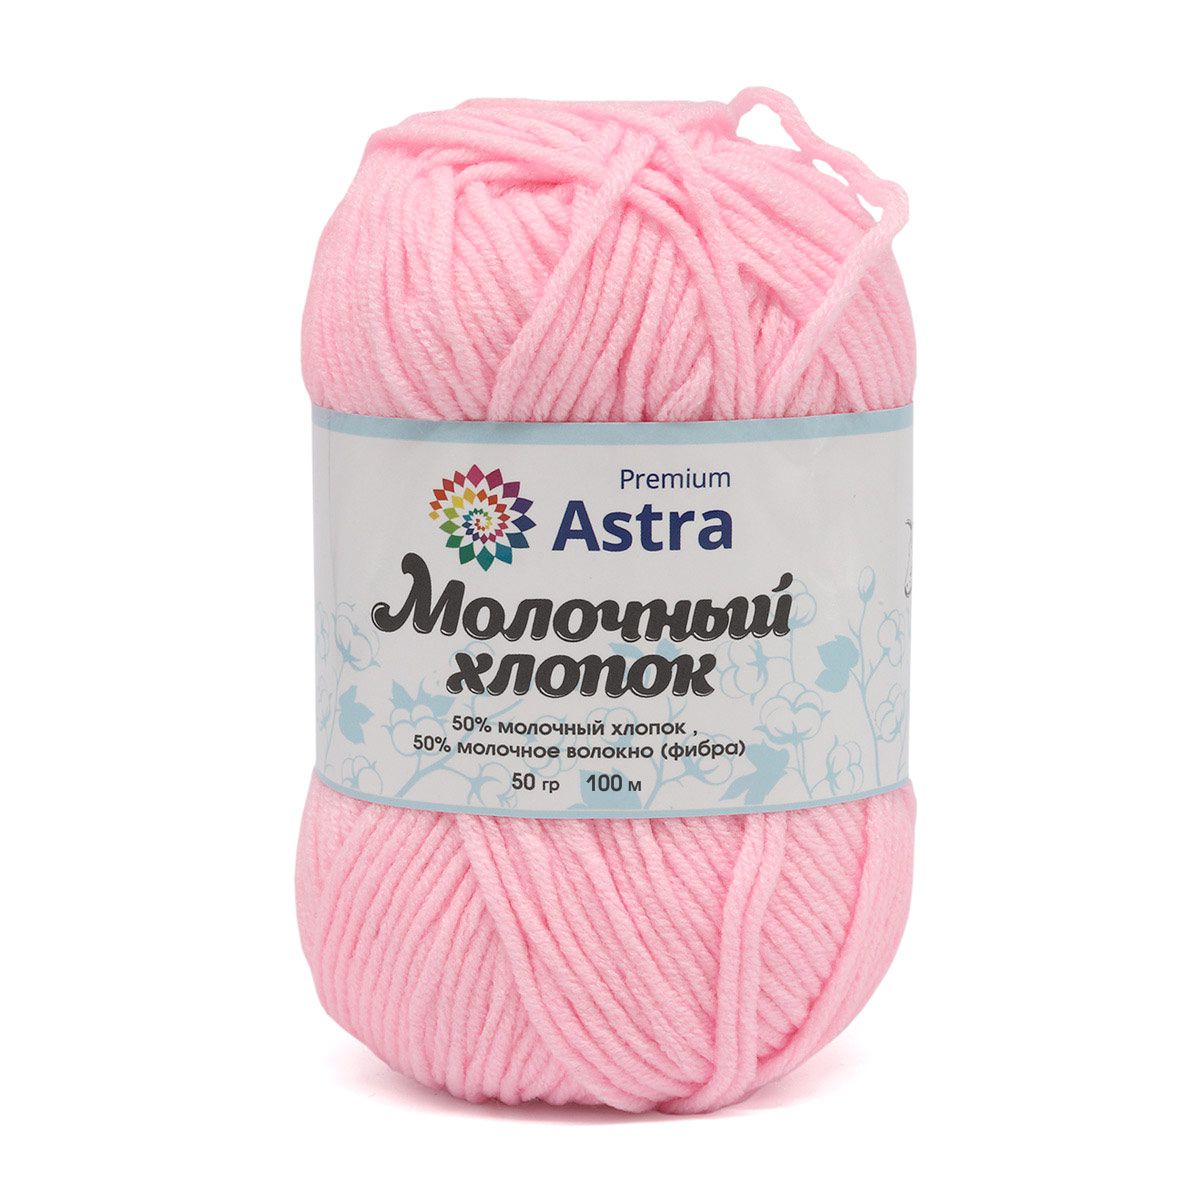 Пряжа для вязания Astra Premium milk cotton хлопок акрил 50 гр 100 м 02 нежно-розовый 3 мотка - фото 10